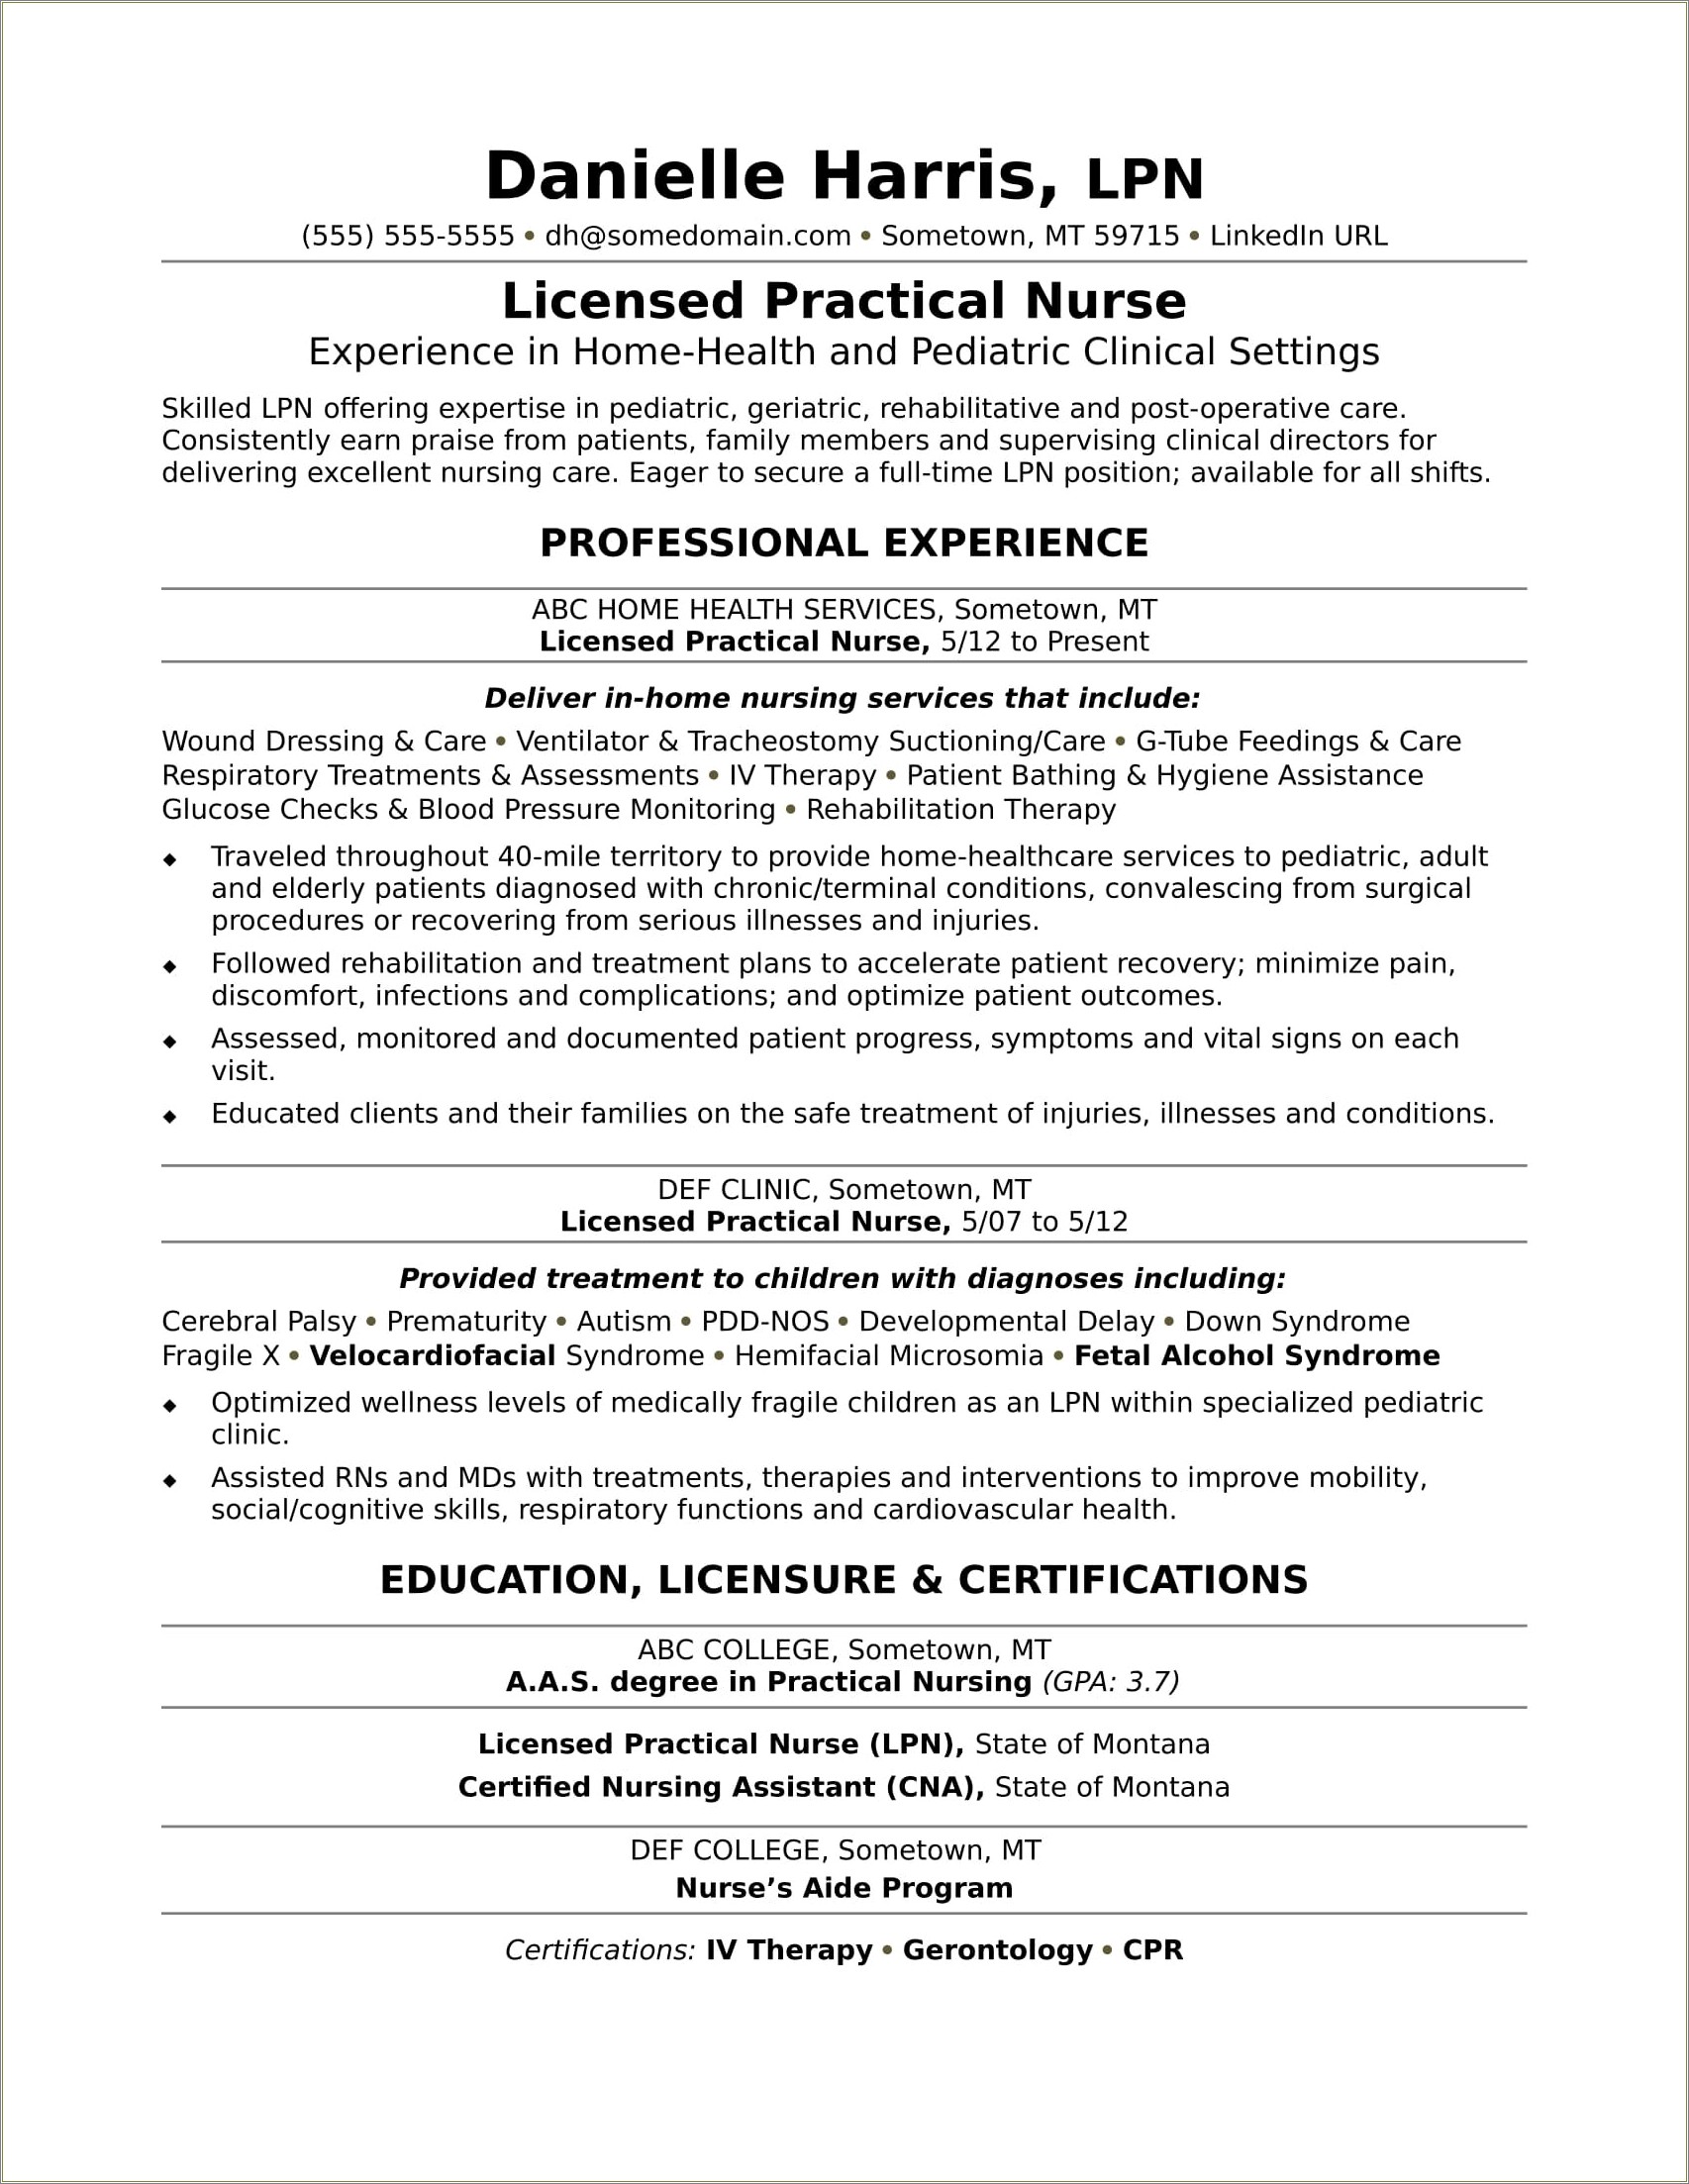 Licensed Vocational Nurse Job Description For Resume